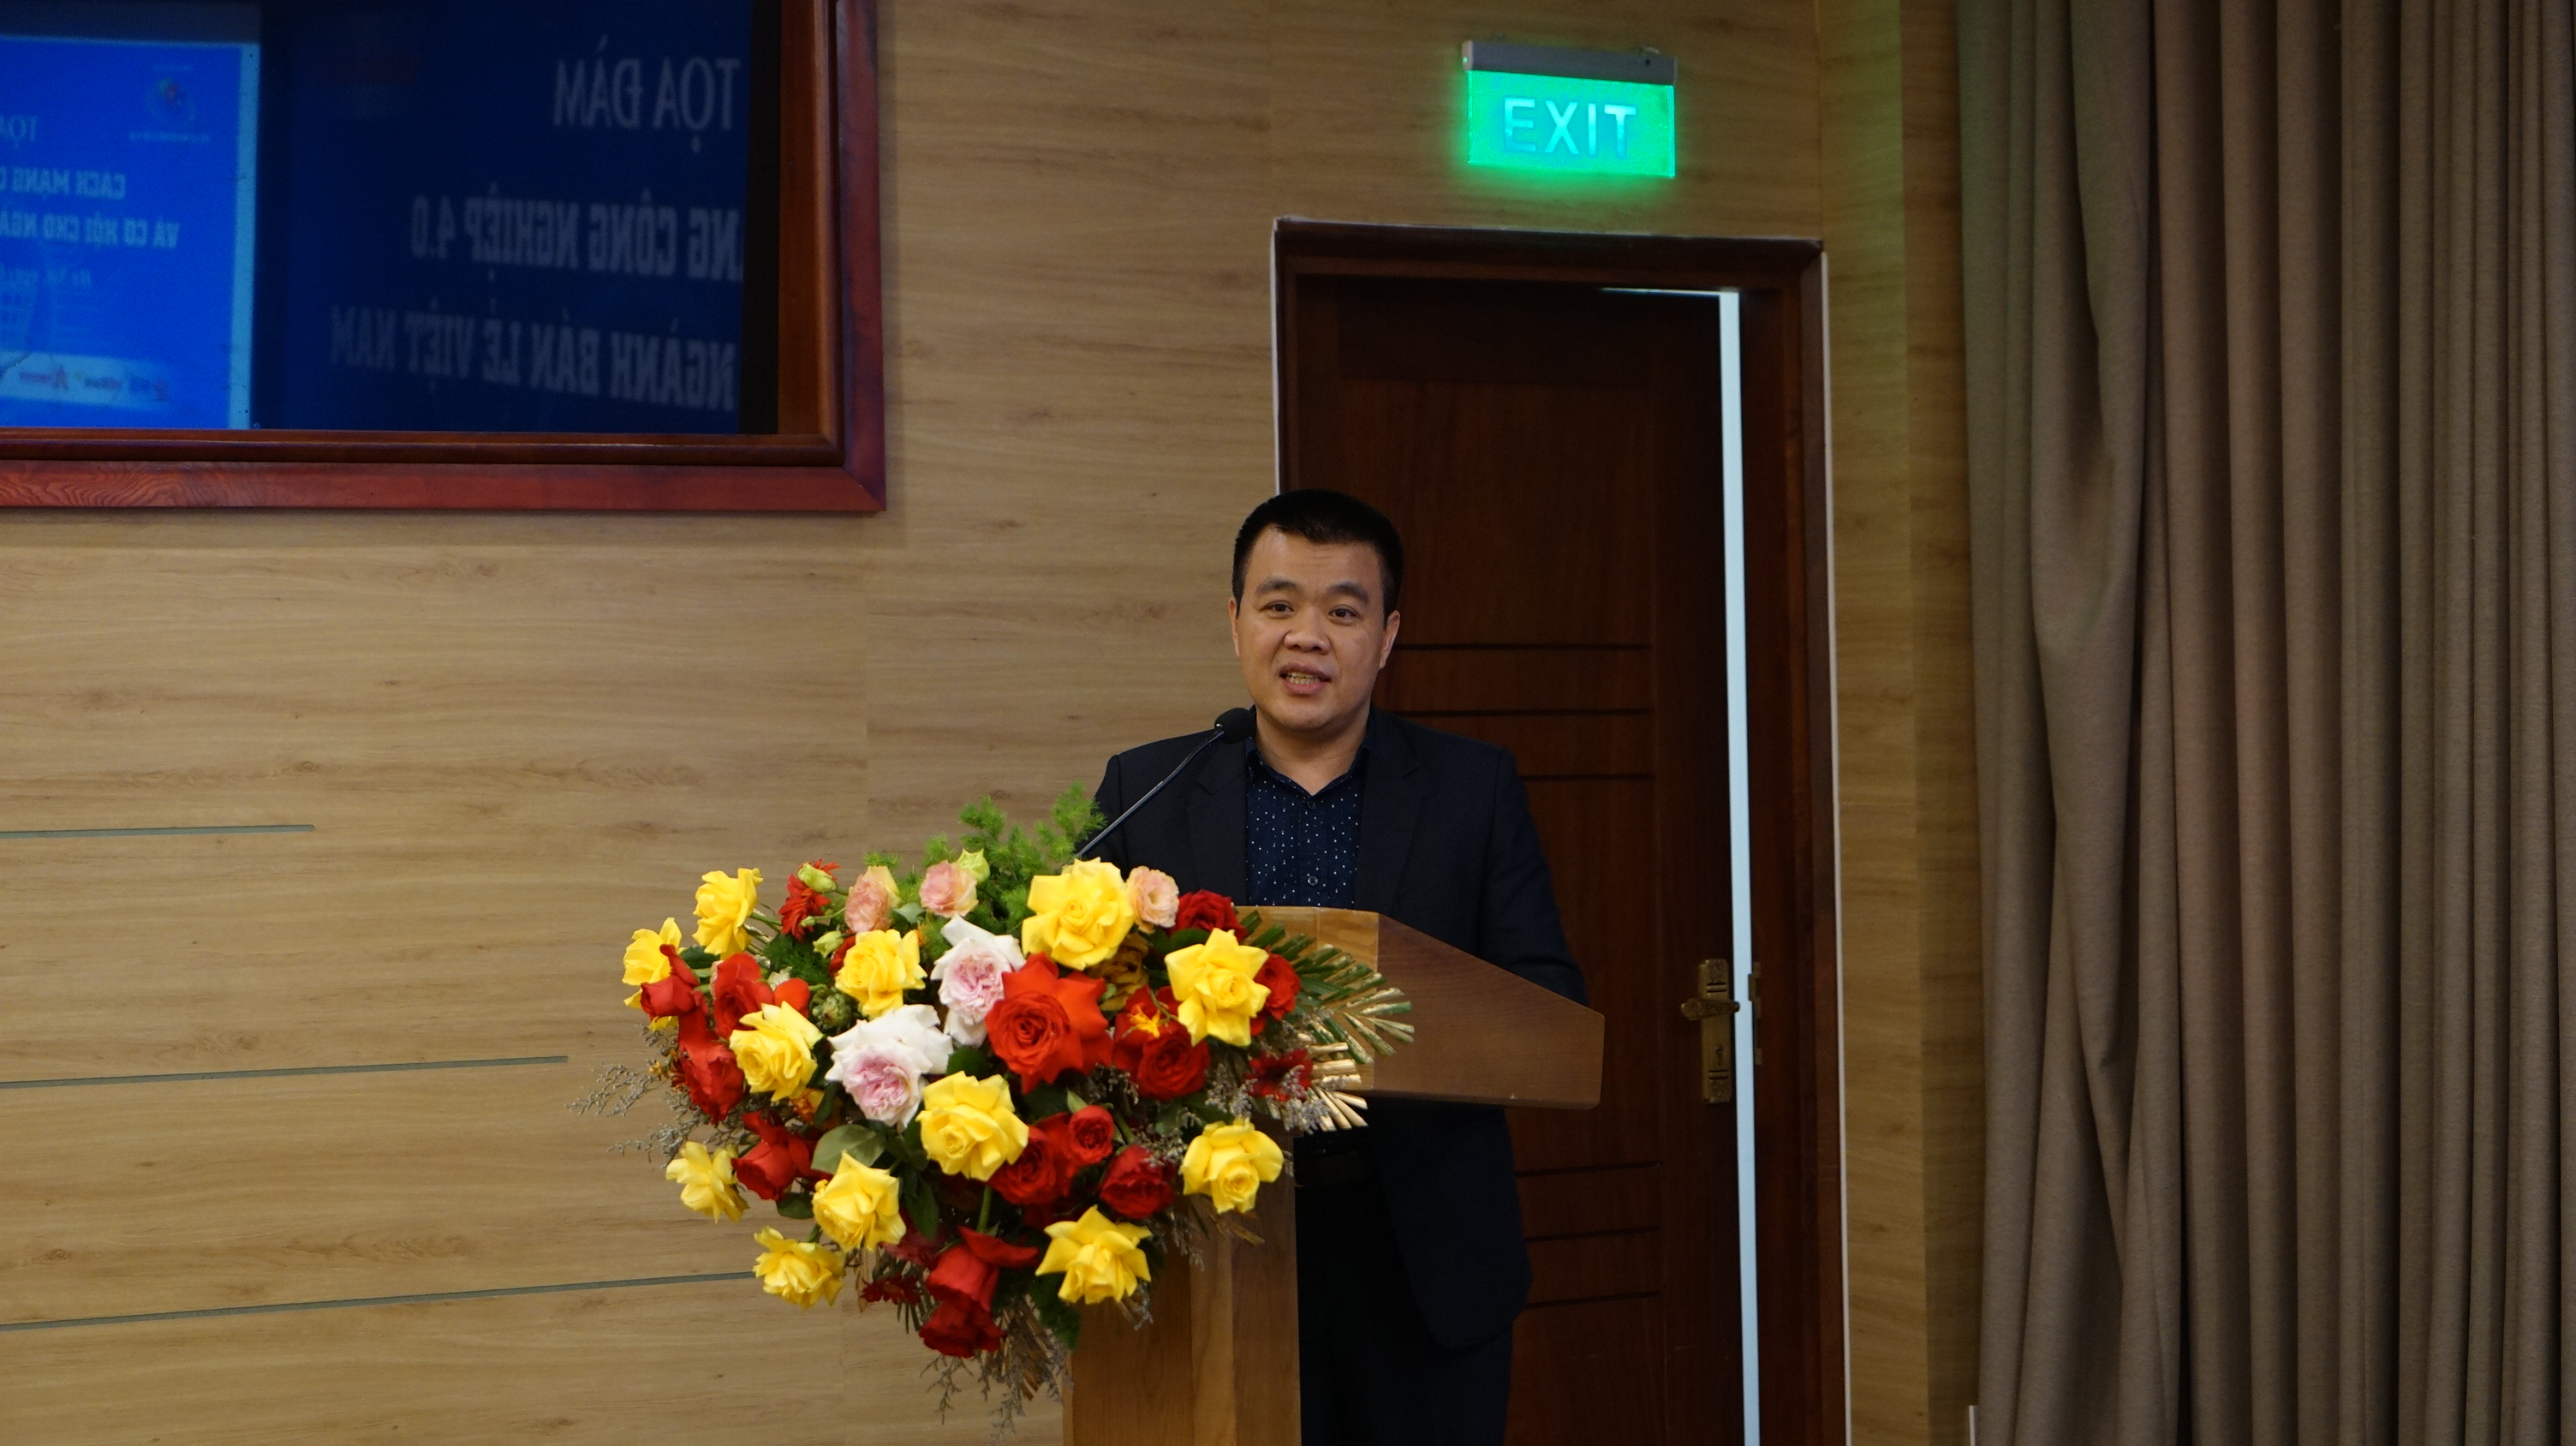 CẬP NHẬT: Tọa đàm &quot;Cách mạng công nghiệp 4.0 và cơ hội cho ngành bán lẻ Việt Nam&quot;